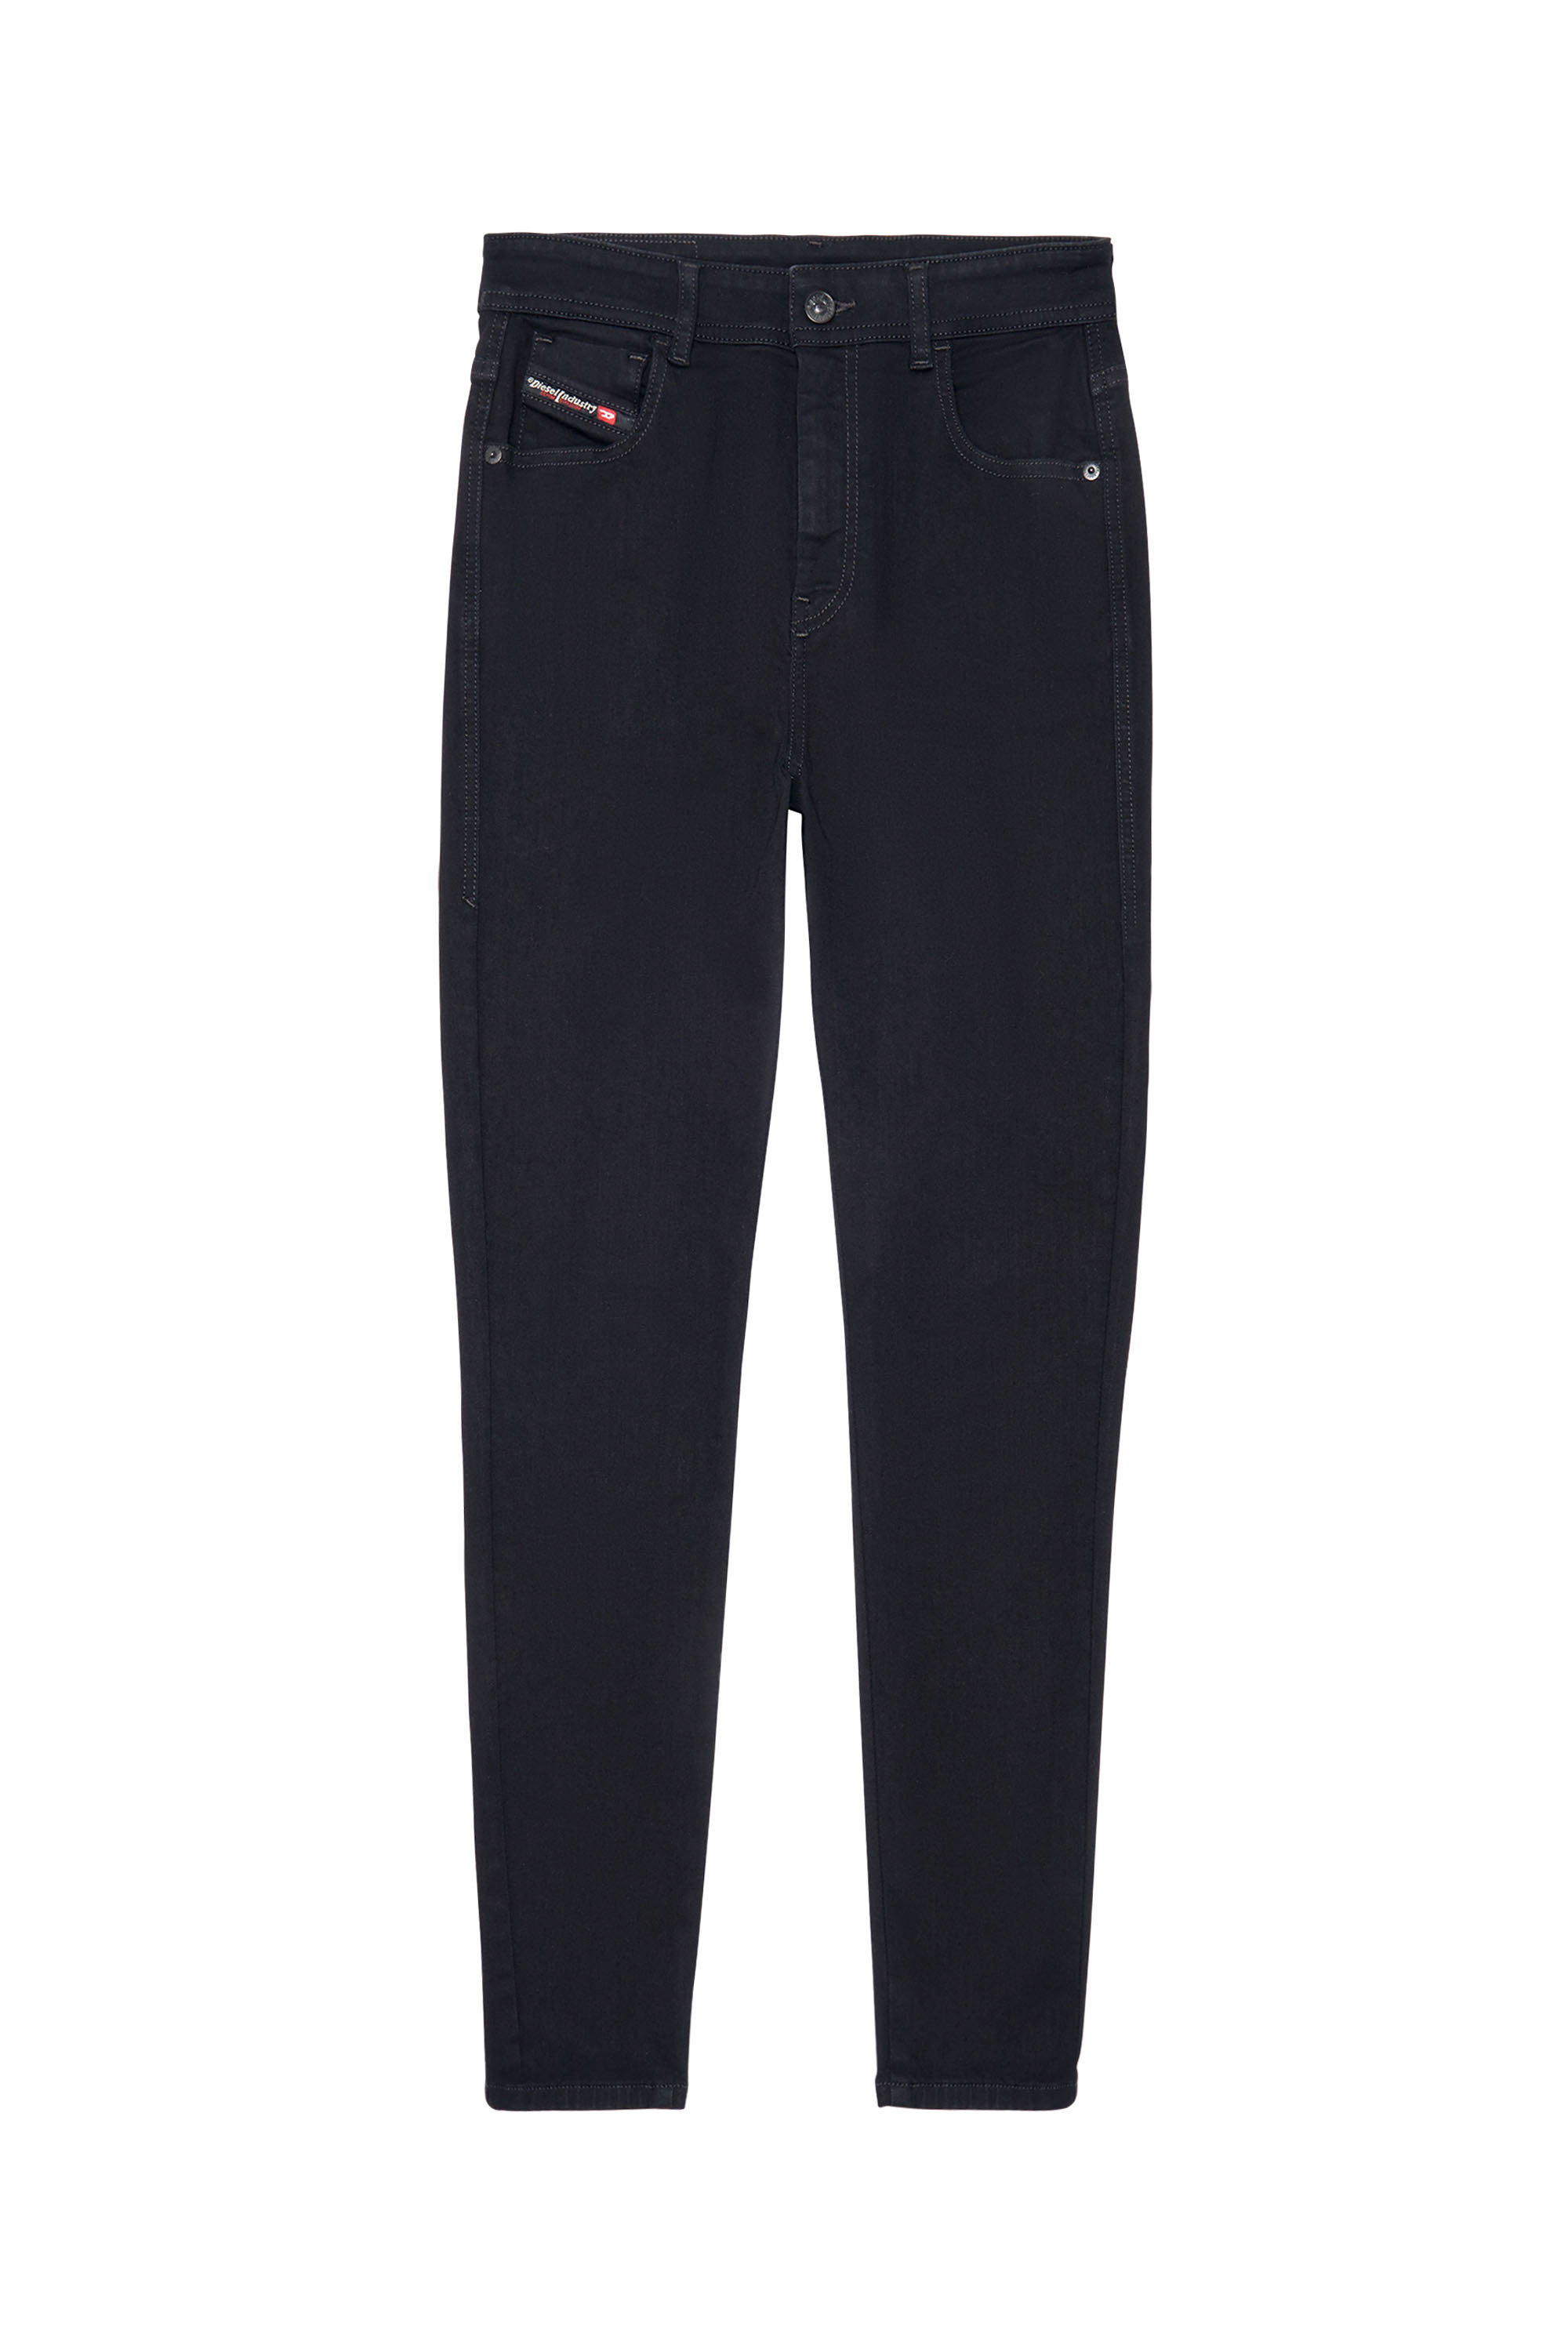 Diesel - Woman Super skinny Jeans 1984 Slandy-High 069EF, Black/Dark grey - Image 7